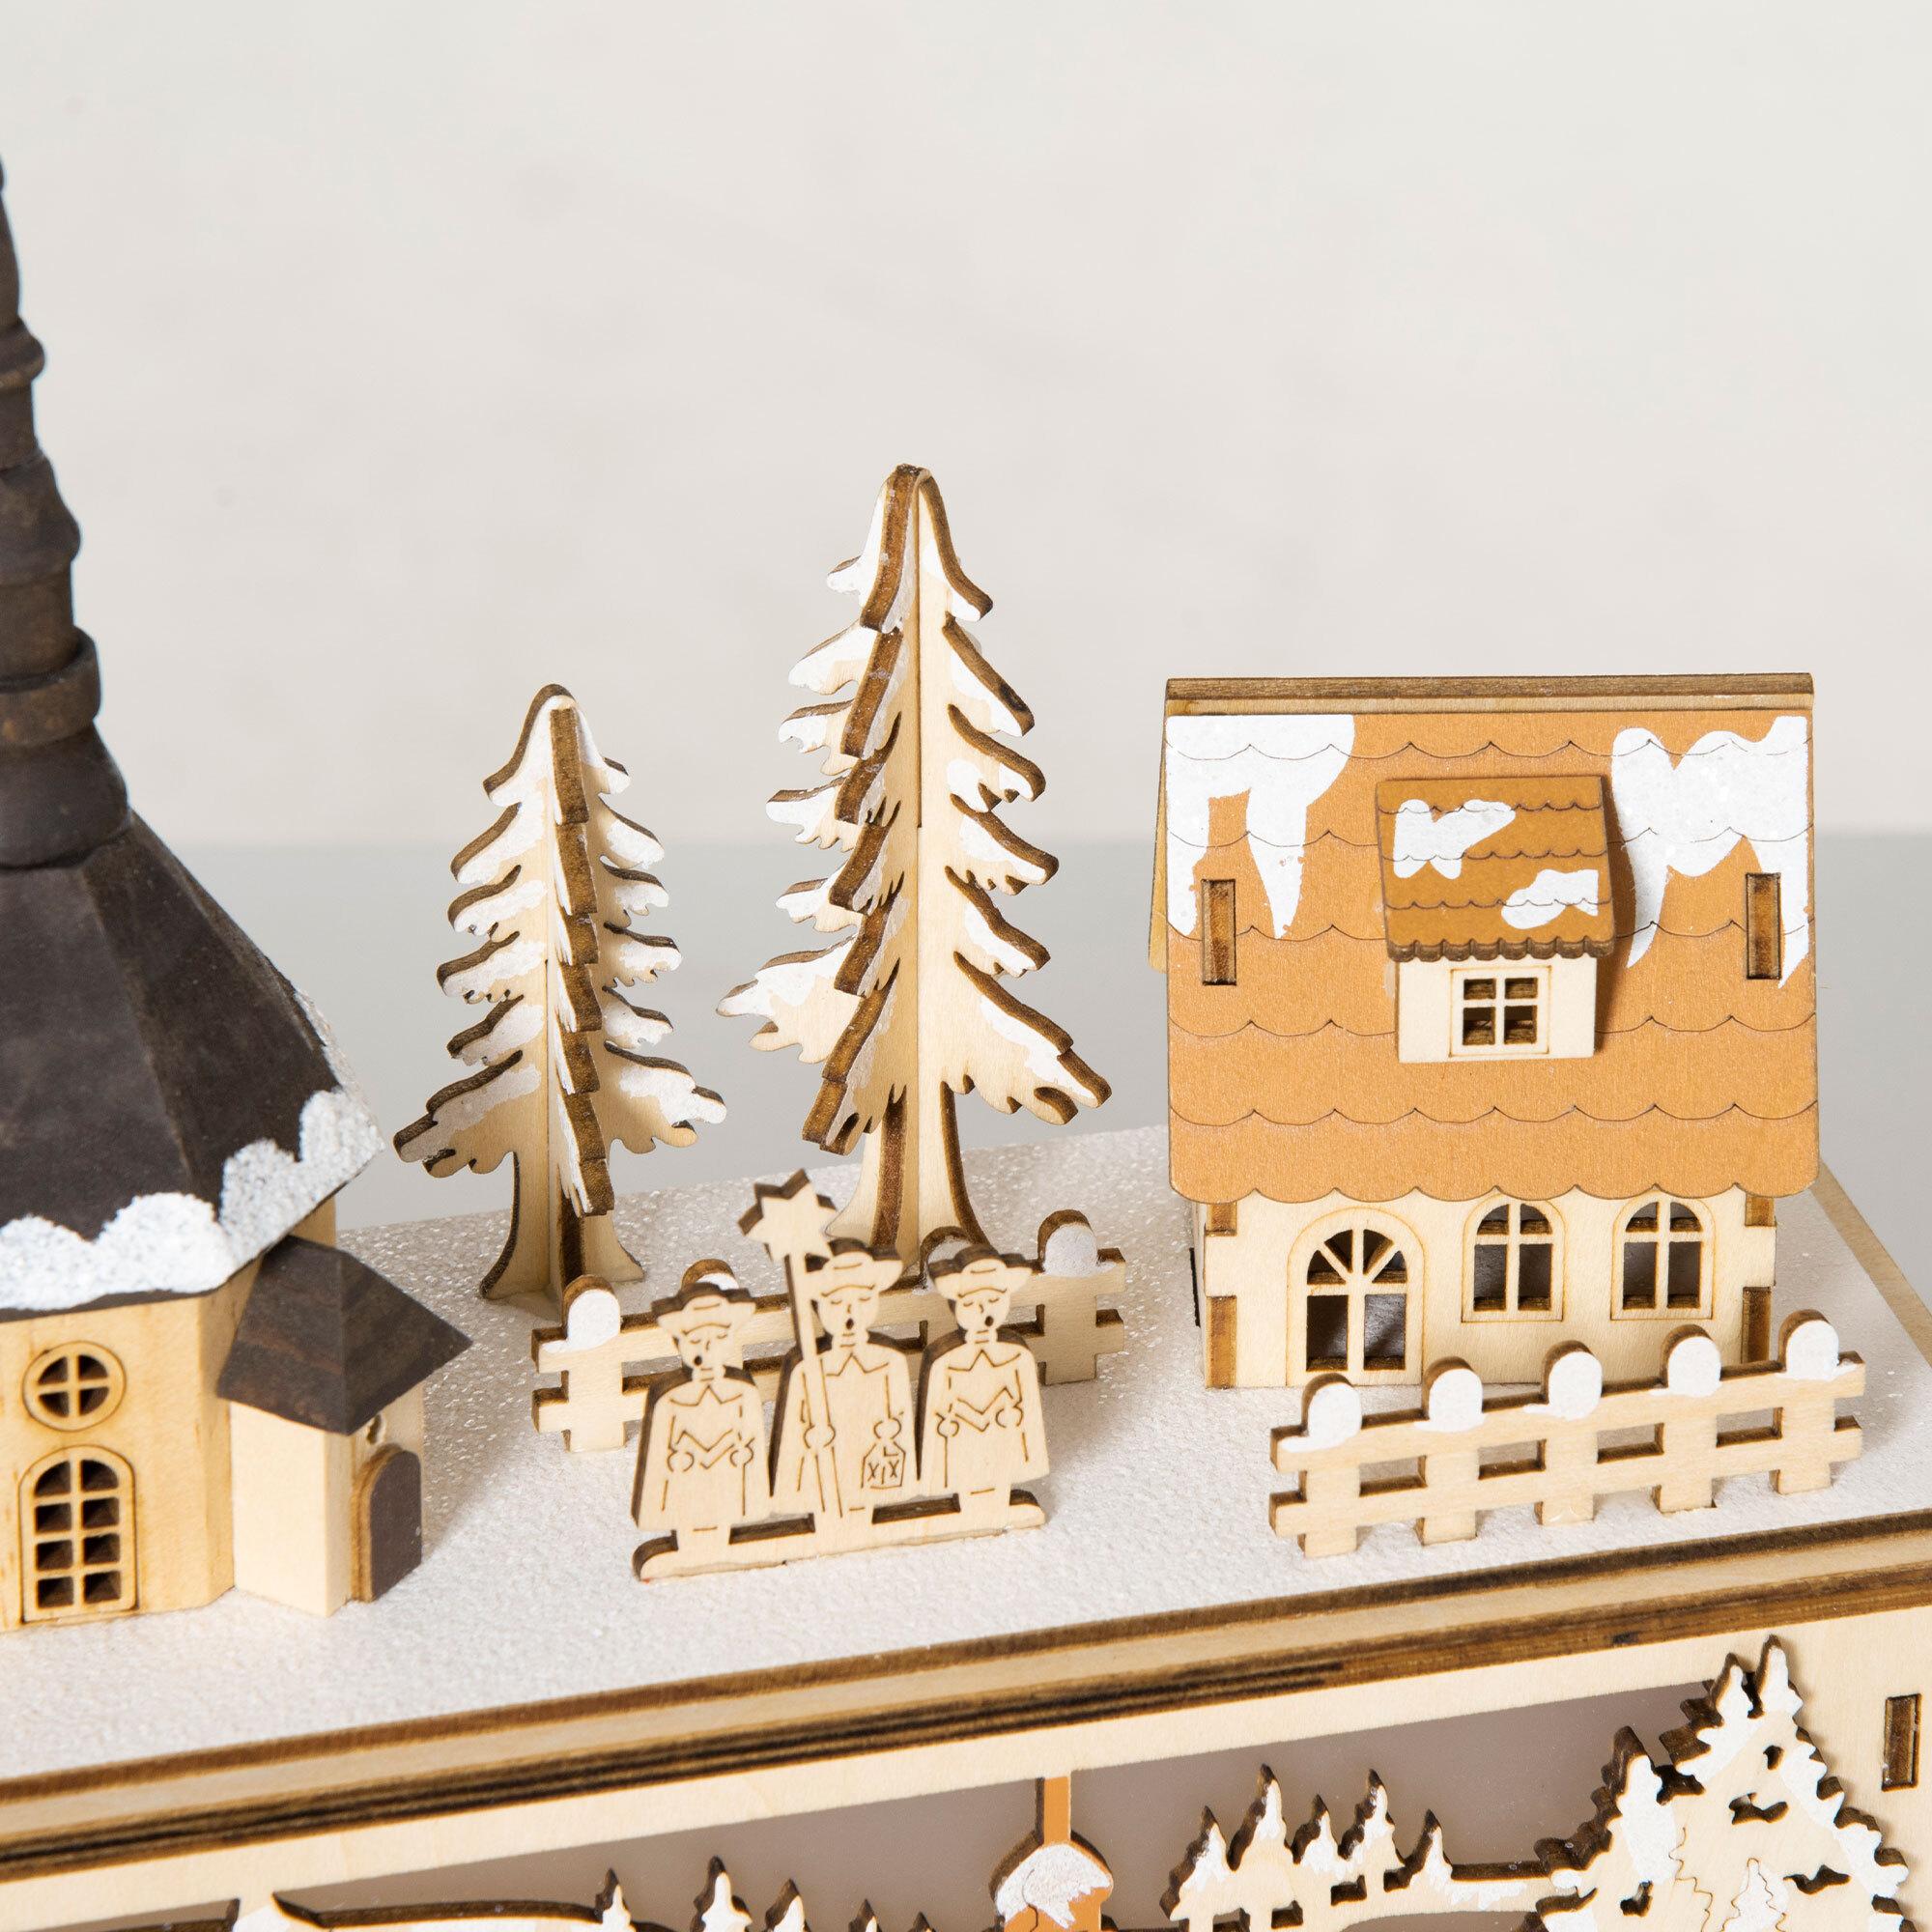 Homcom - Village de Noël lumineux avec église, maisons, personnages -  décoration lumineuse de Noël - 10 lumières LED blanc chaud - contreplaqué